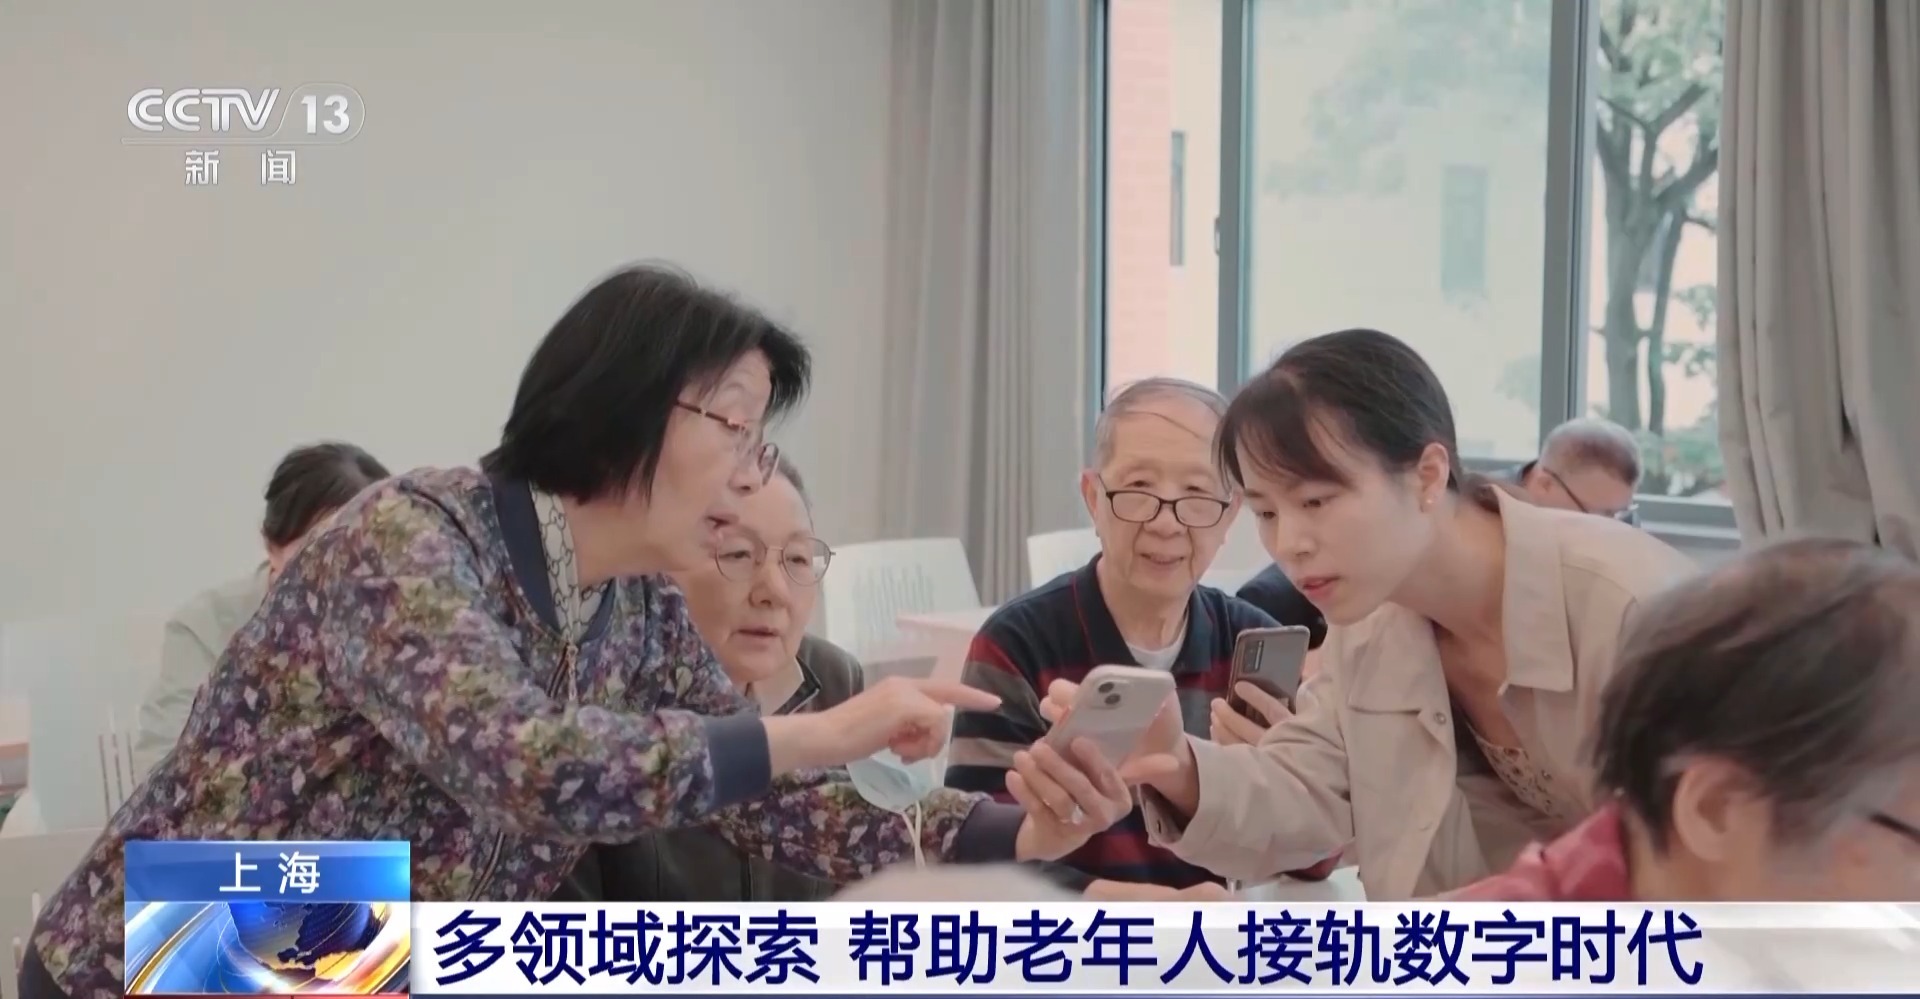 如何消除数字鸿沟 让老年人共享数字生活？上海多领域探索→